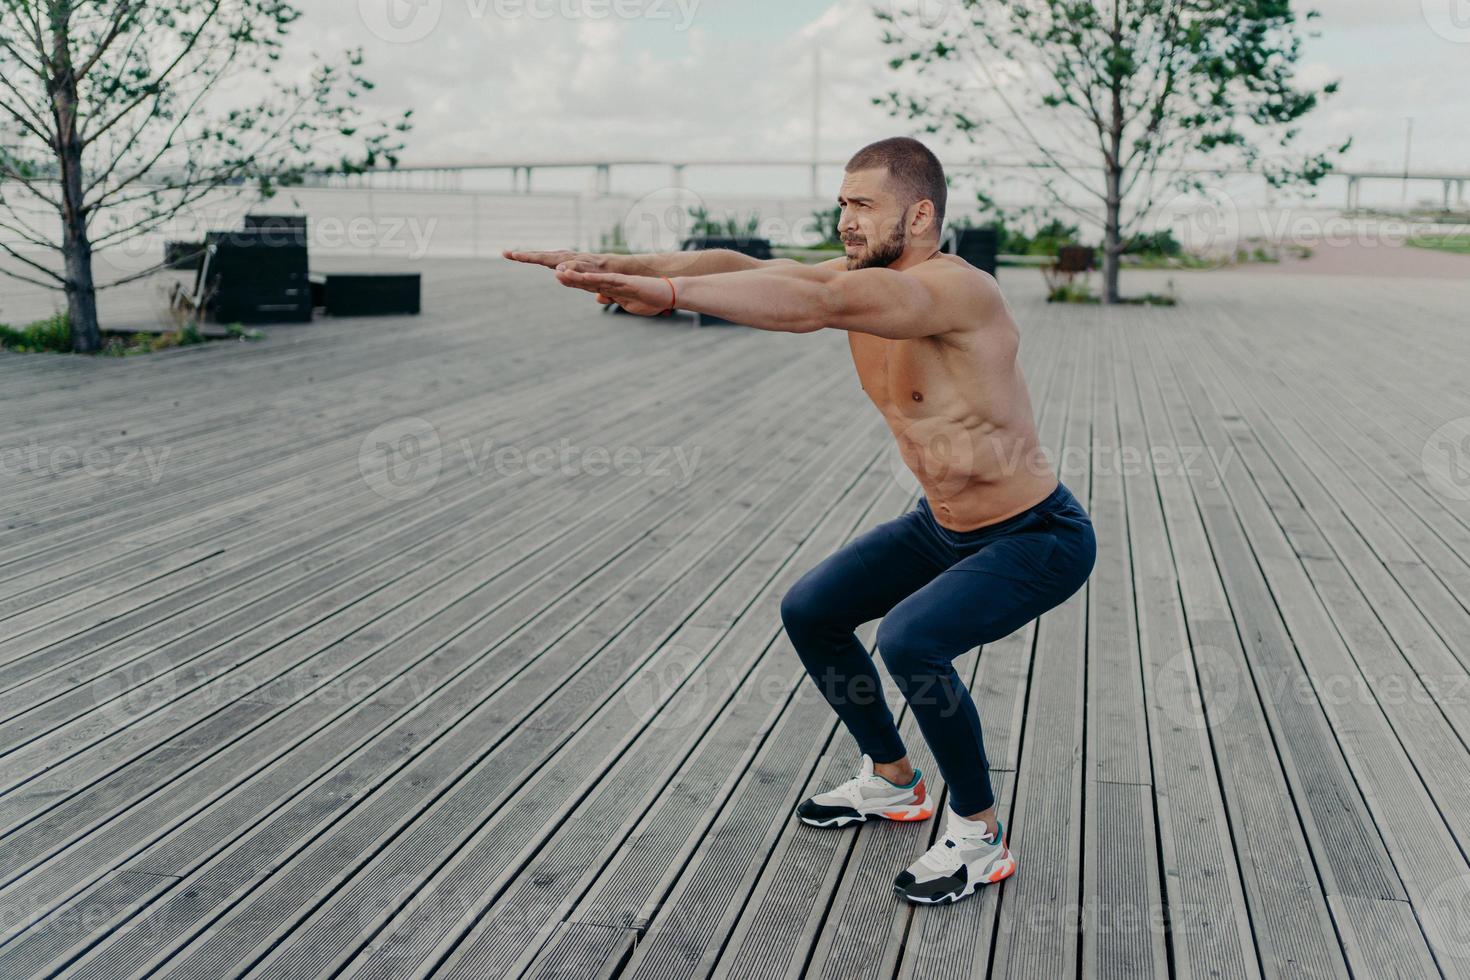 la foto completa del hombre activo hace poses de ejercicio en cuclillas con el torso desnudo tiene poses de cuerpo musculoso afuera. hombre fuerte en forma atlética en ejercicios de ropa deportiva al aire libre. instructor de fitness confiado